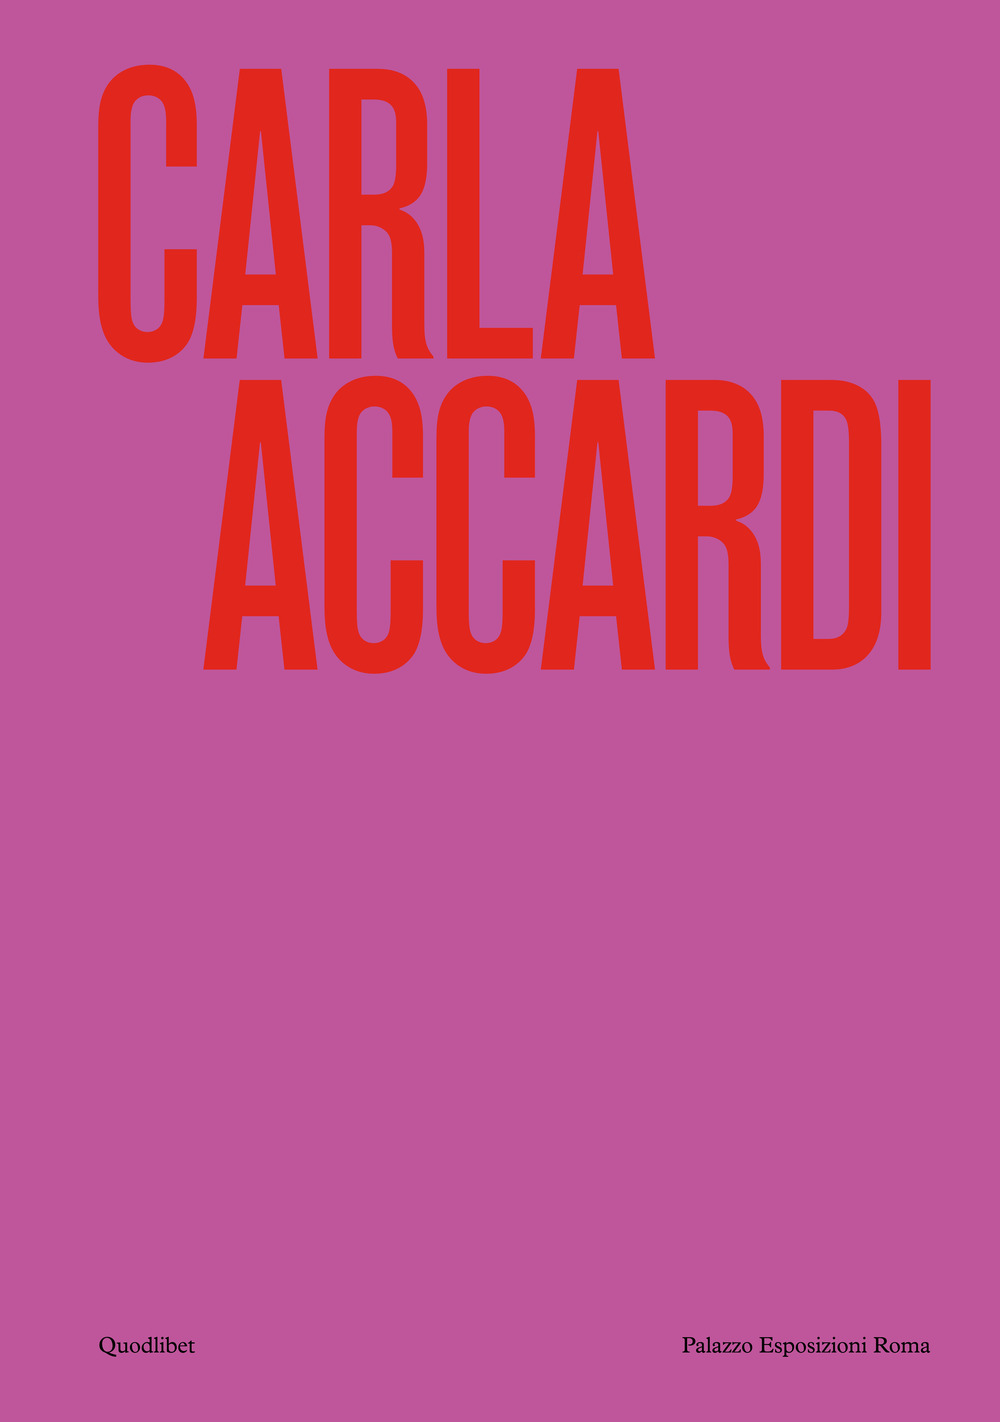 Carla Accardi